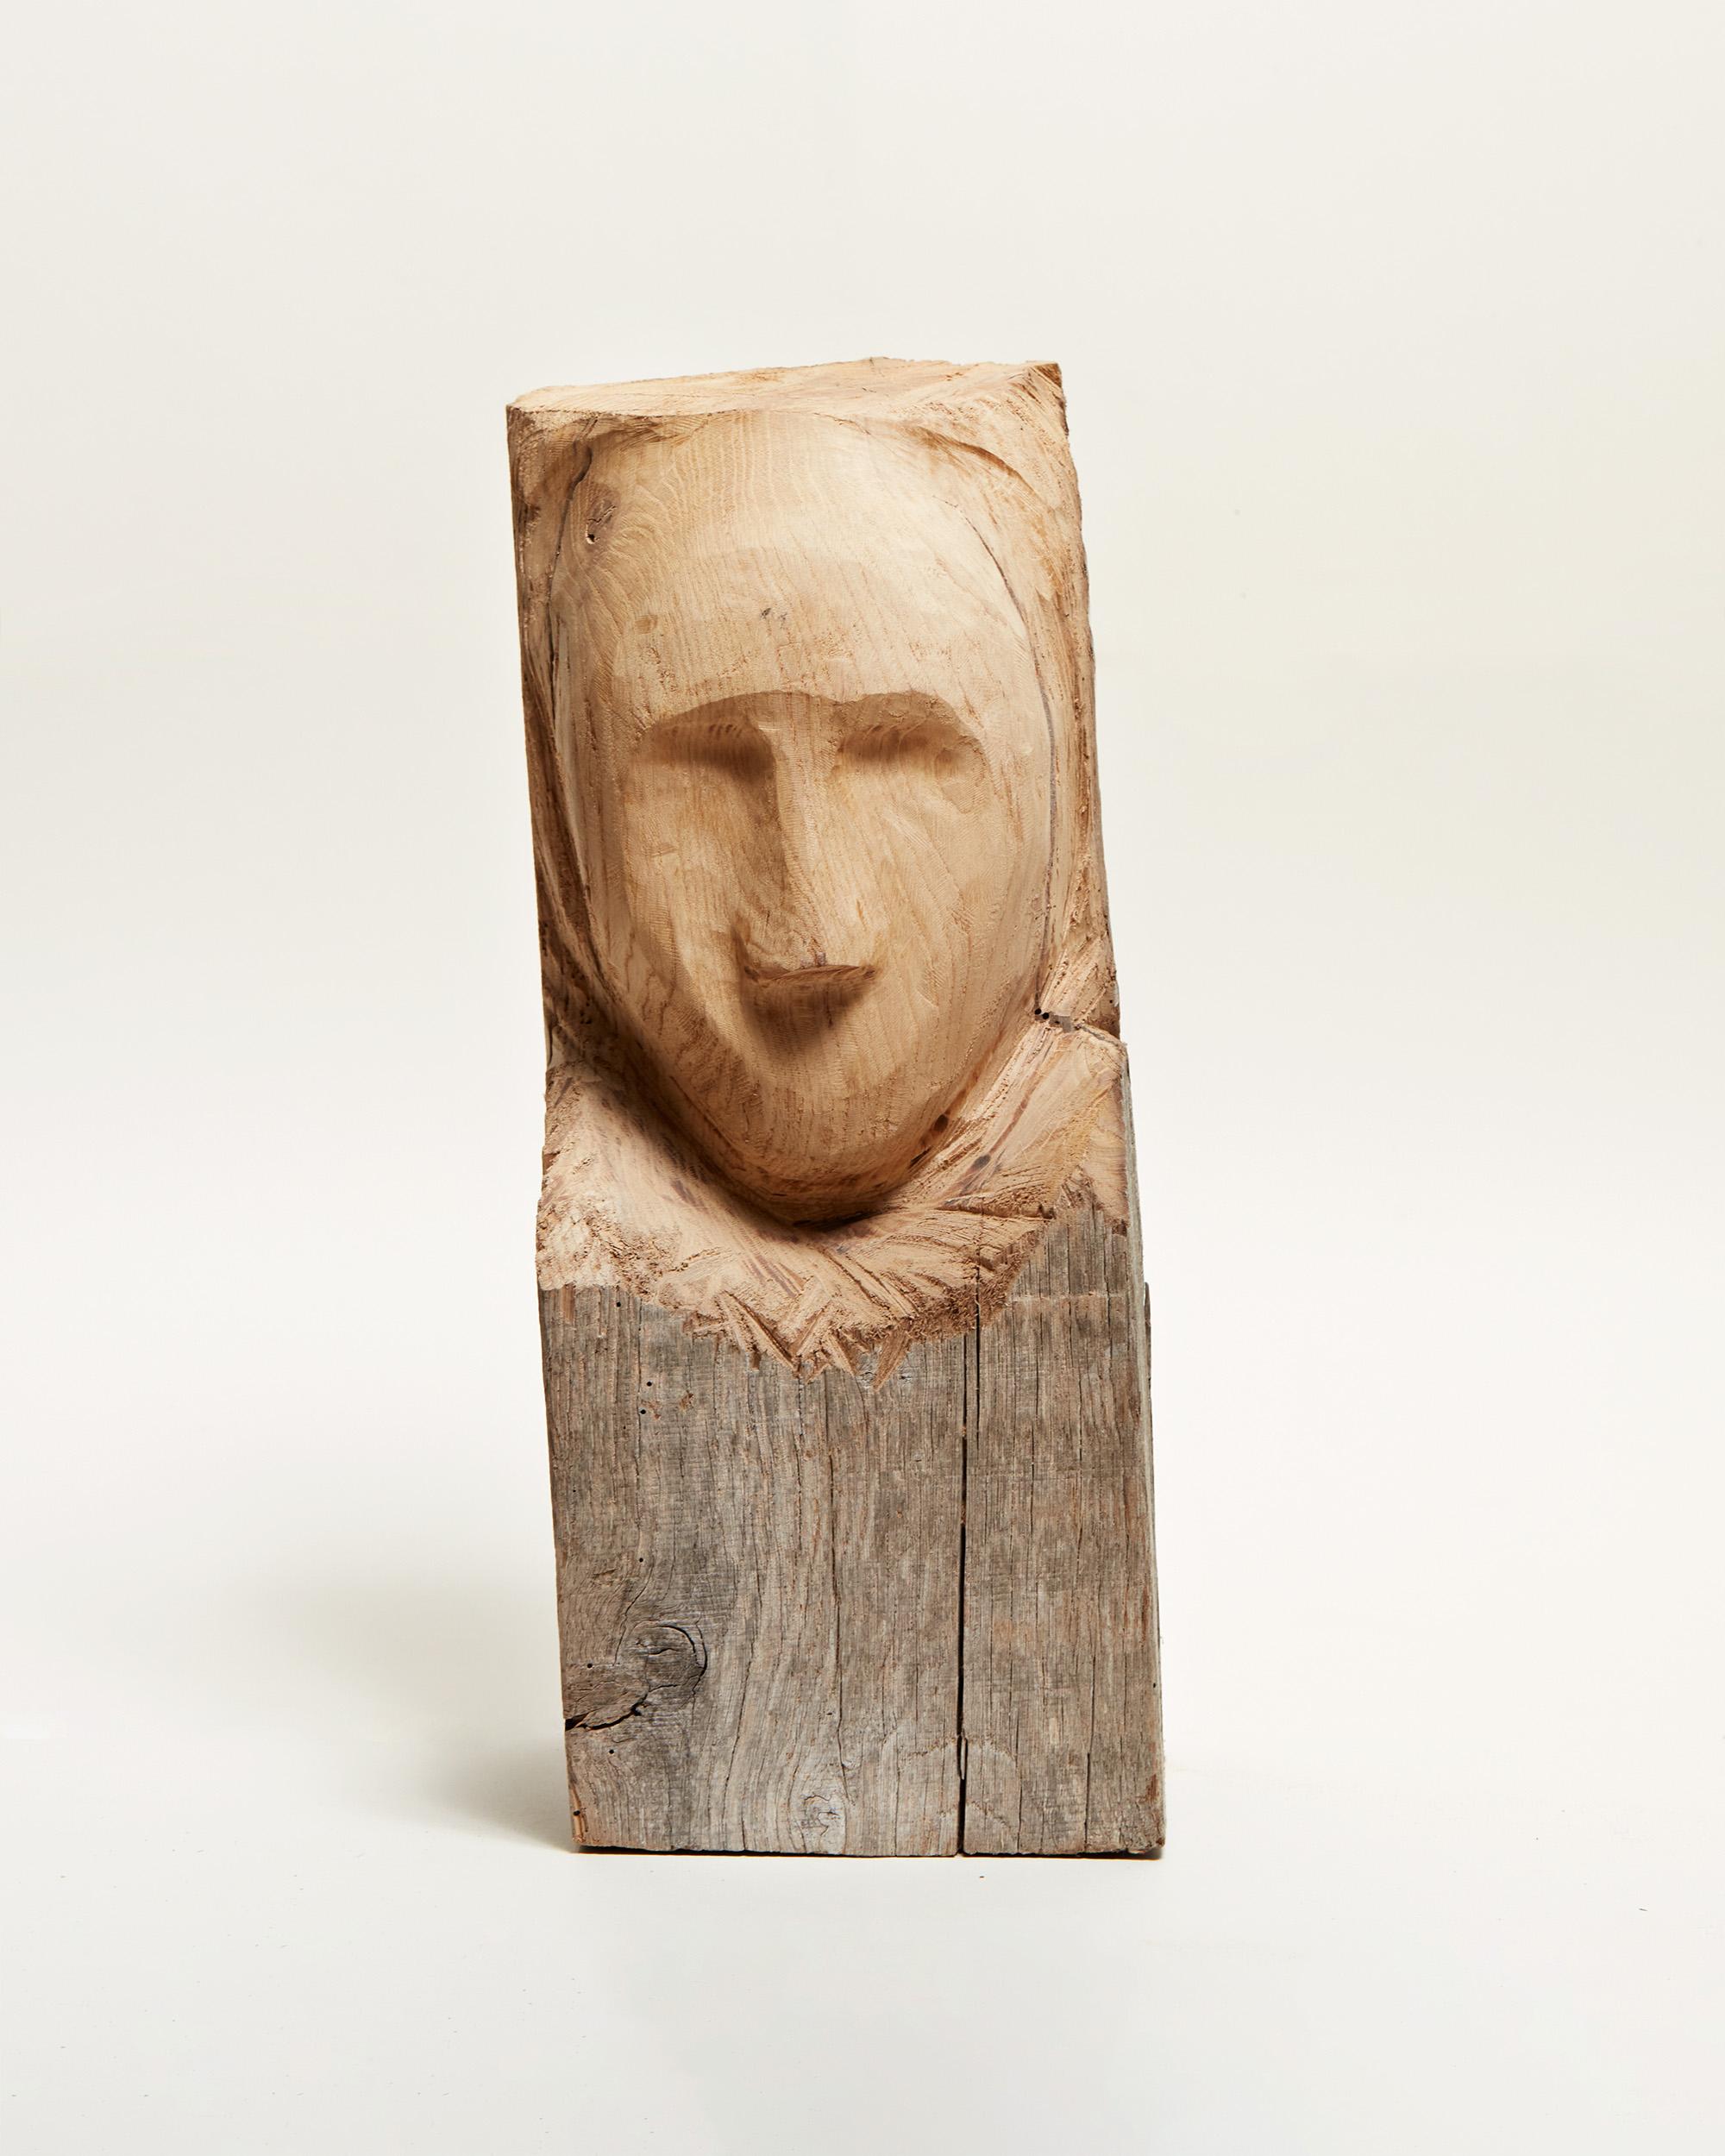 Portraits assemblés - Wood portrait sculpture - Sculpture by Valentin Abad